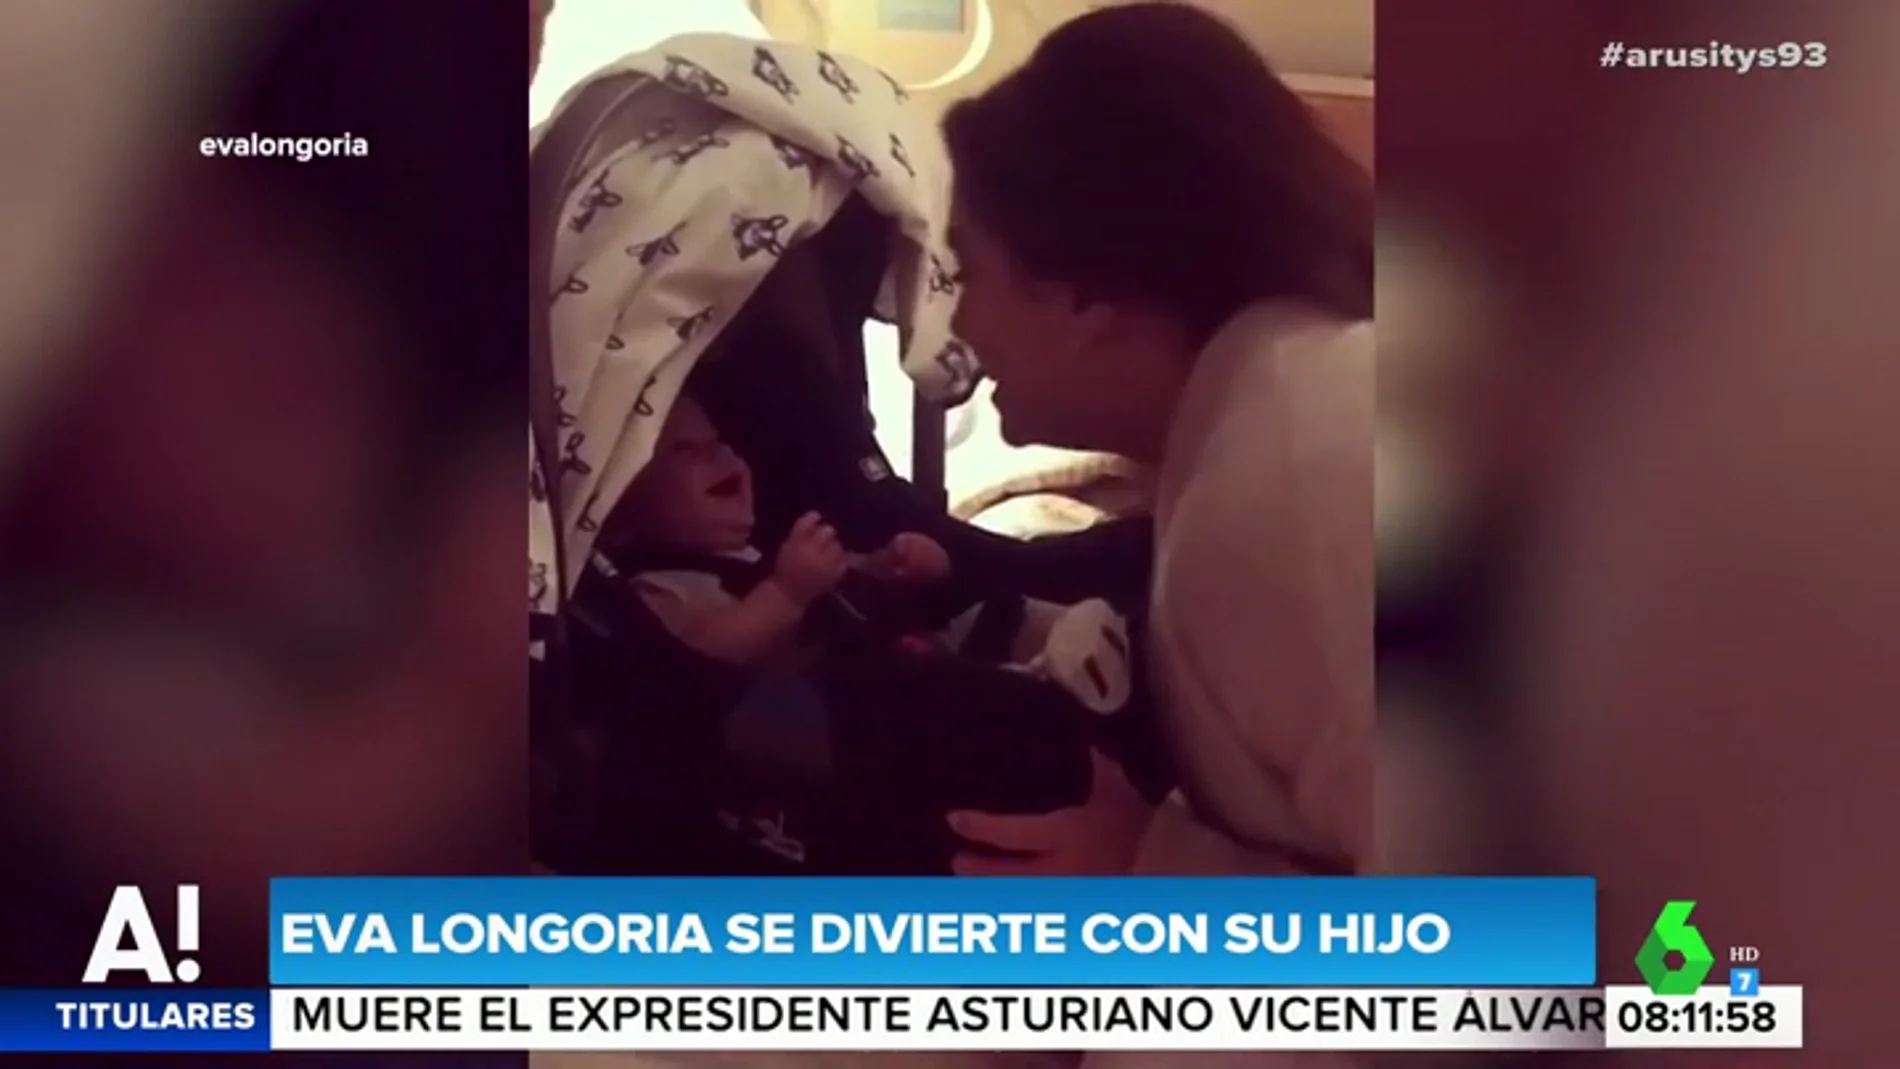 El divertido vídeo de Eva Longoria jugando con su hijo de siete meses